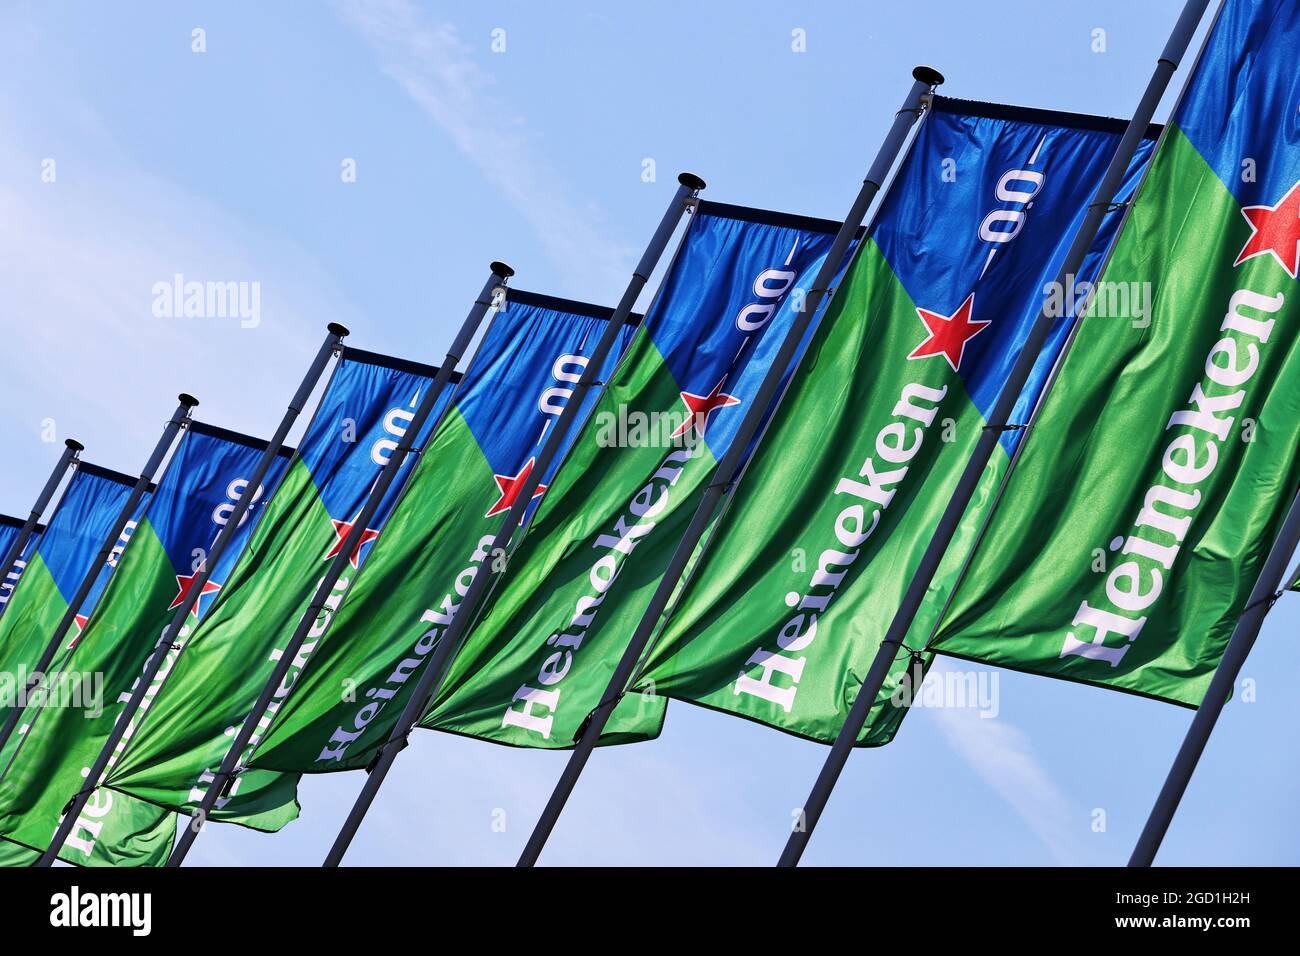 Atmosphäre des Rundkreises - Heineken-Flaggen. Großer Preis von Spanien, Samstag, 8. Mai 2021. Barcelona, Spanien. Stockfoto